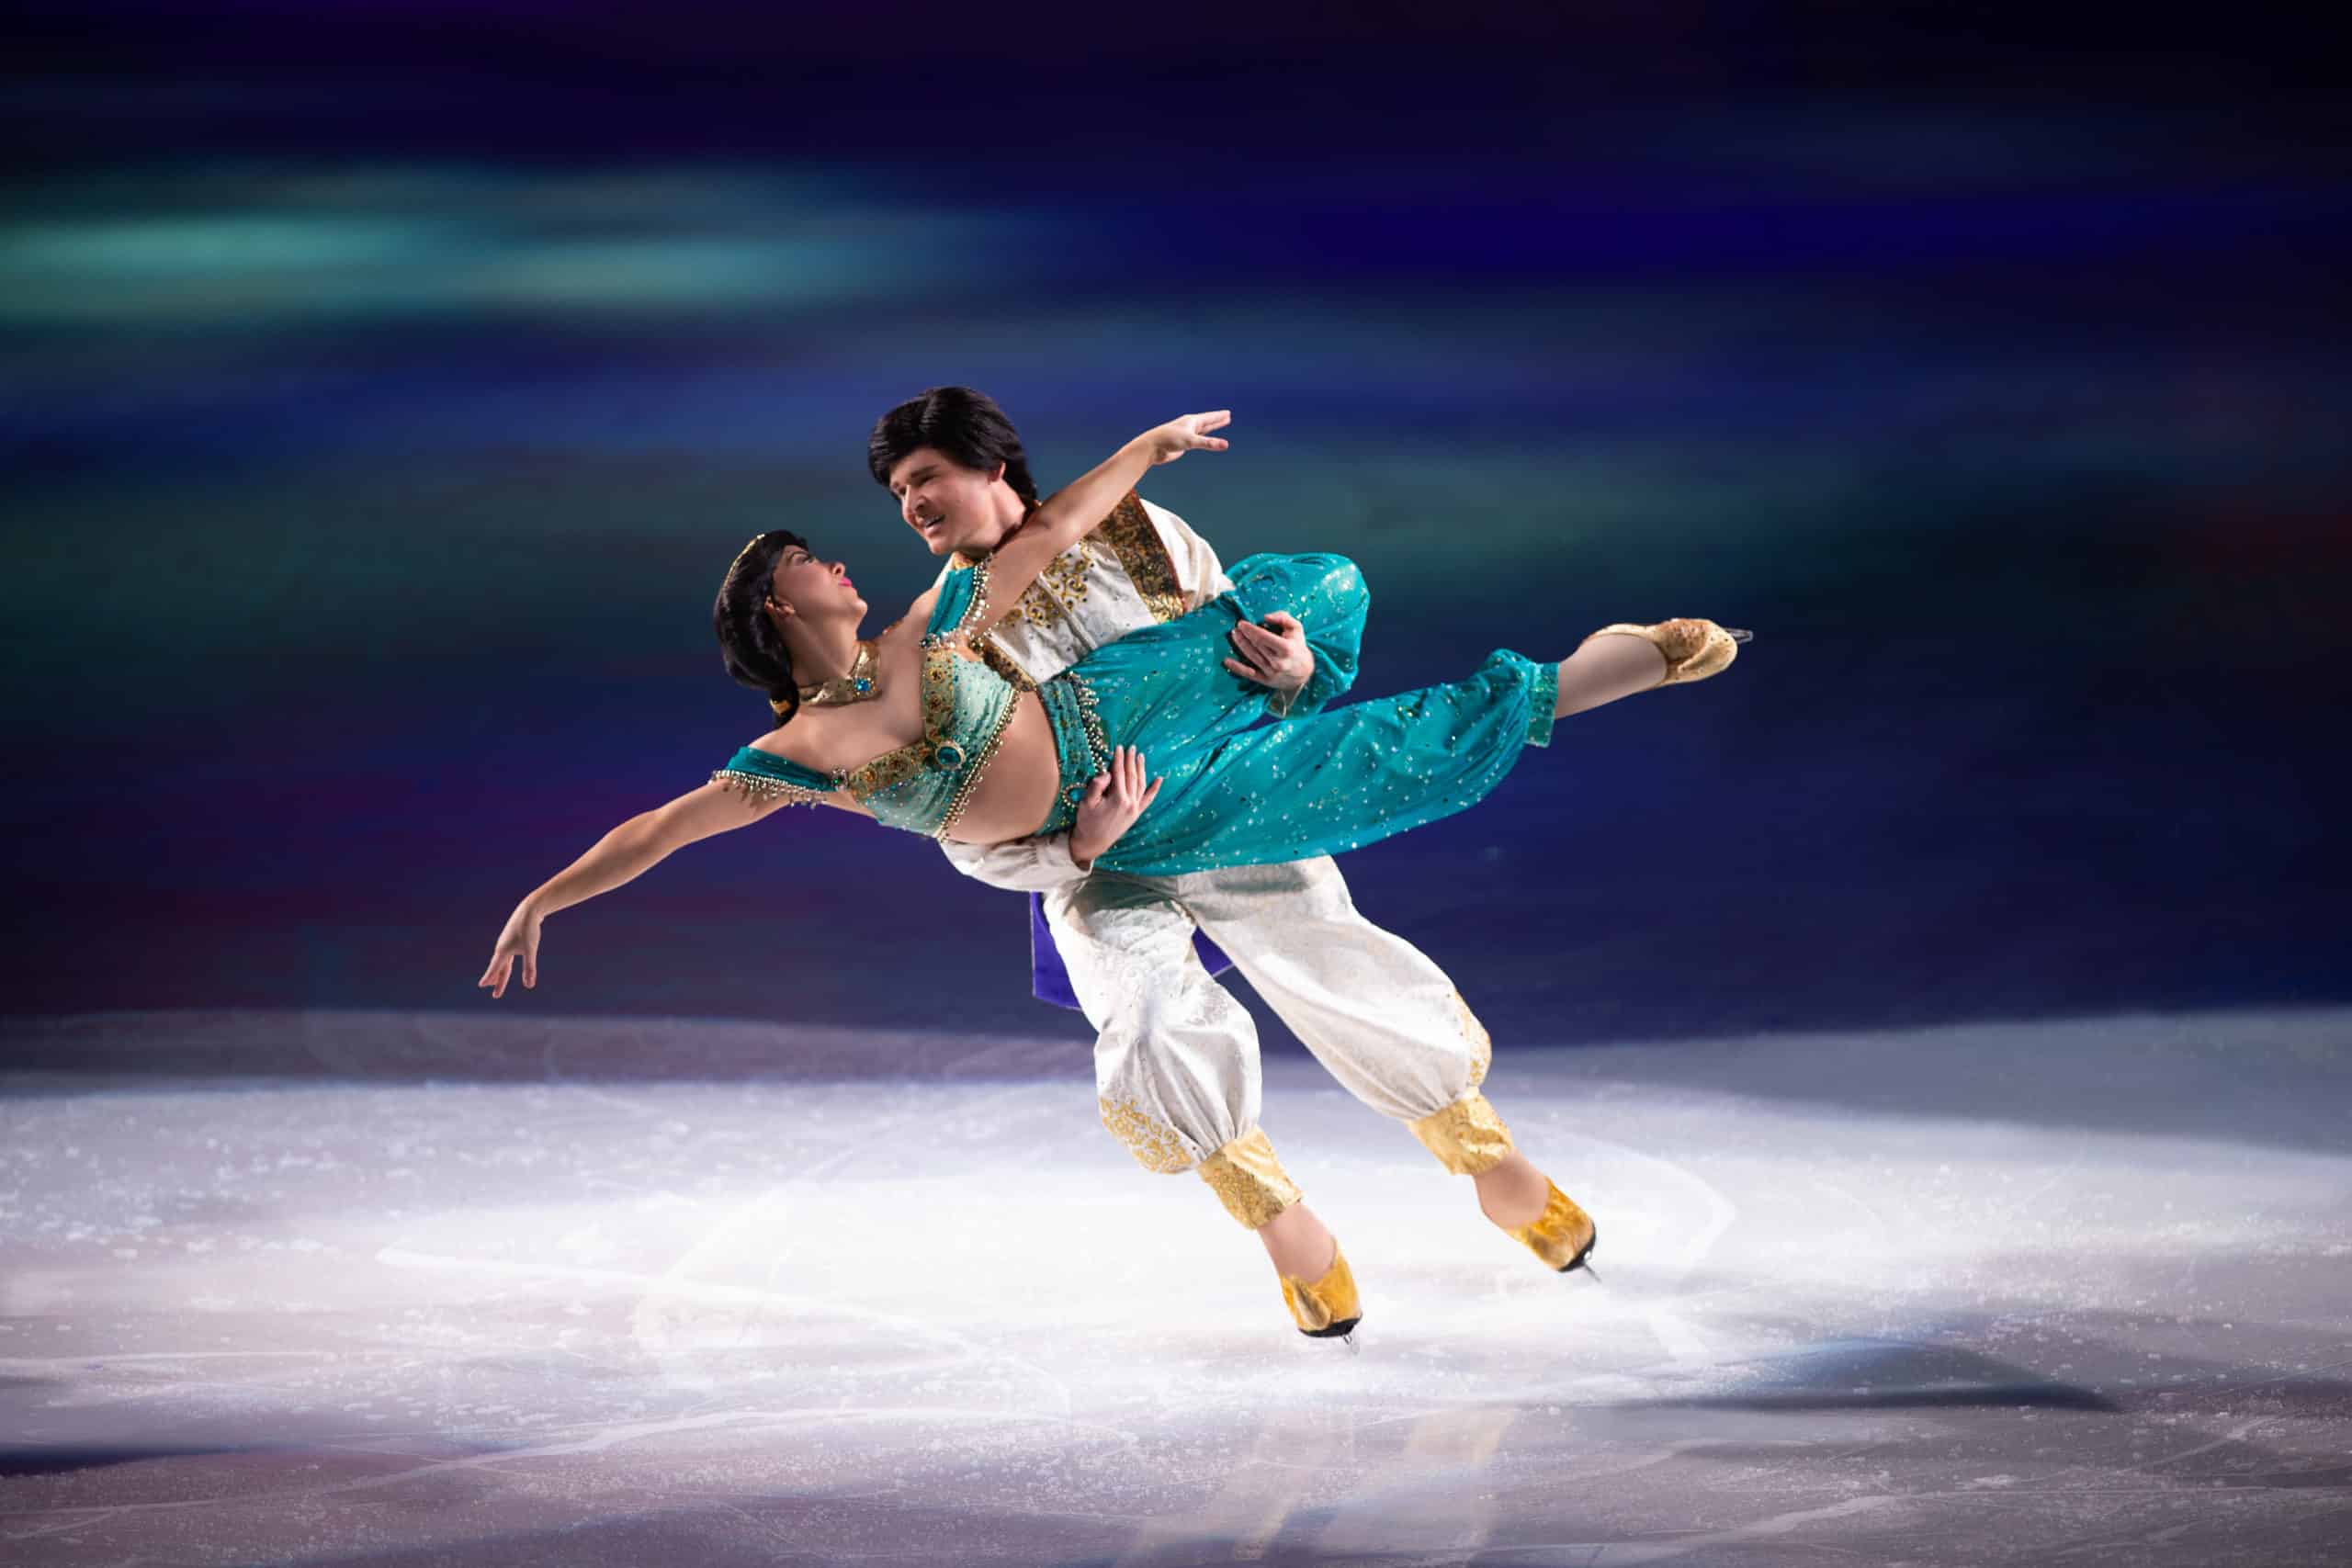 Jasmine and Aladdin Ice Skating